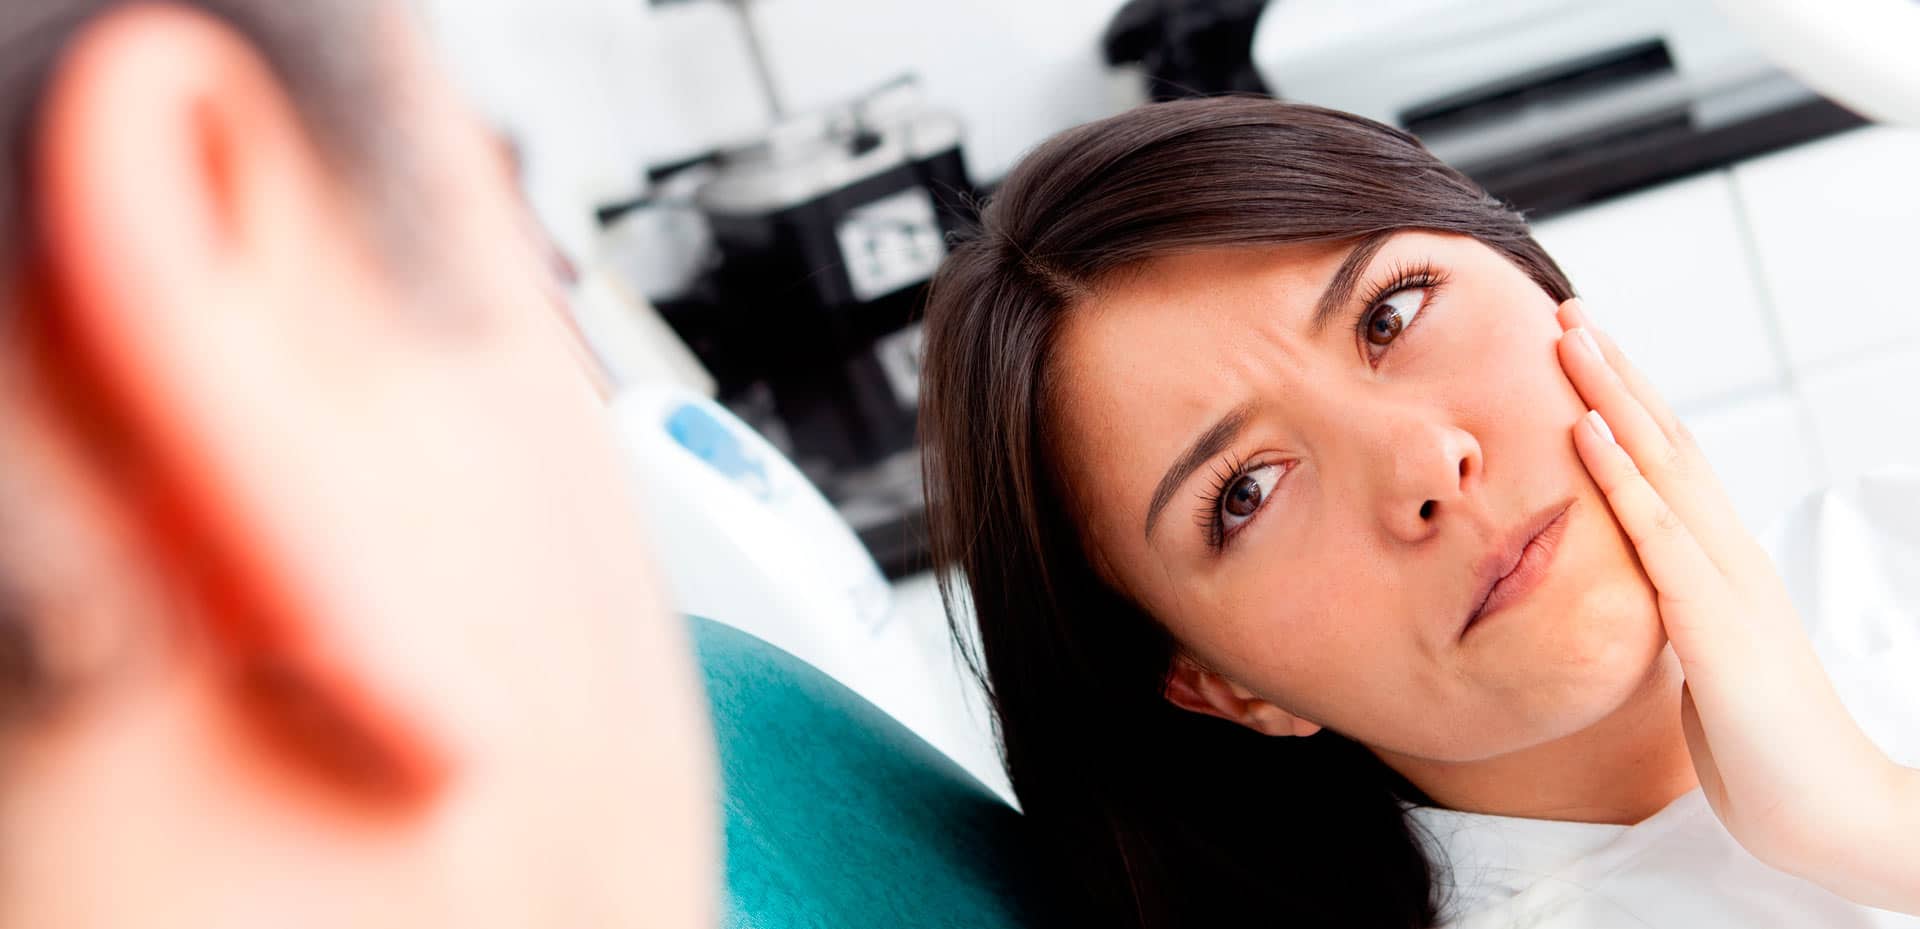 Periodontia - Contenção periodontal